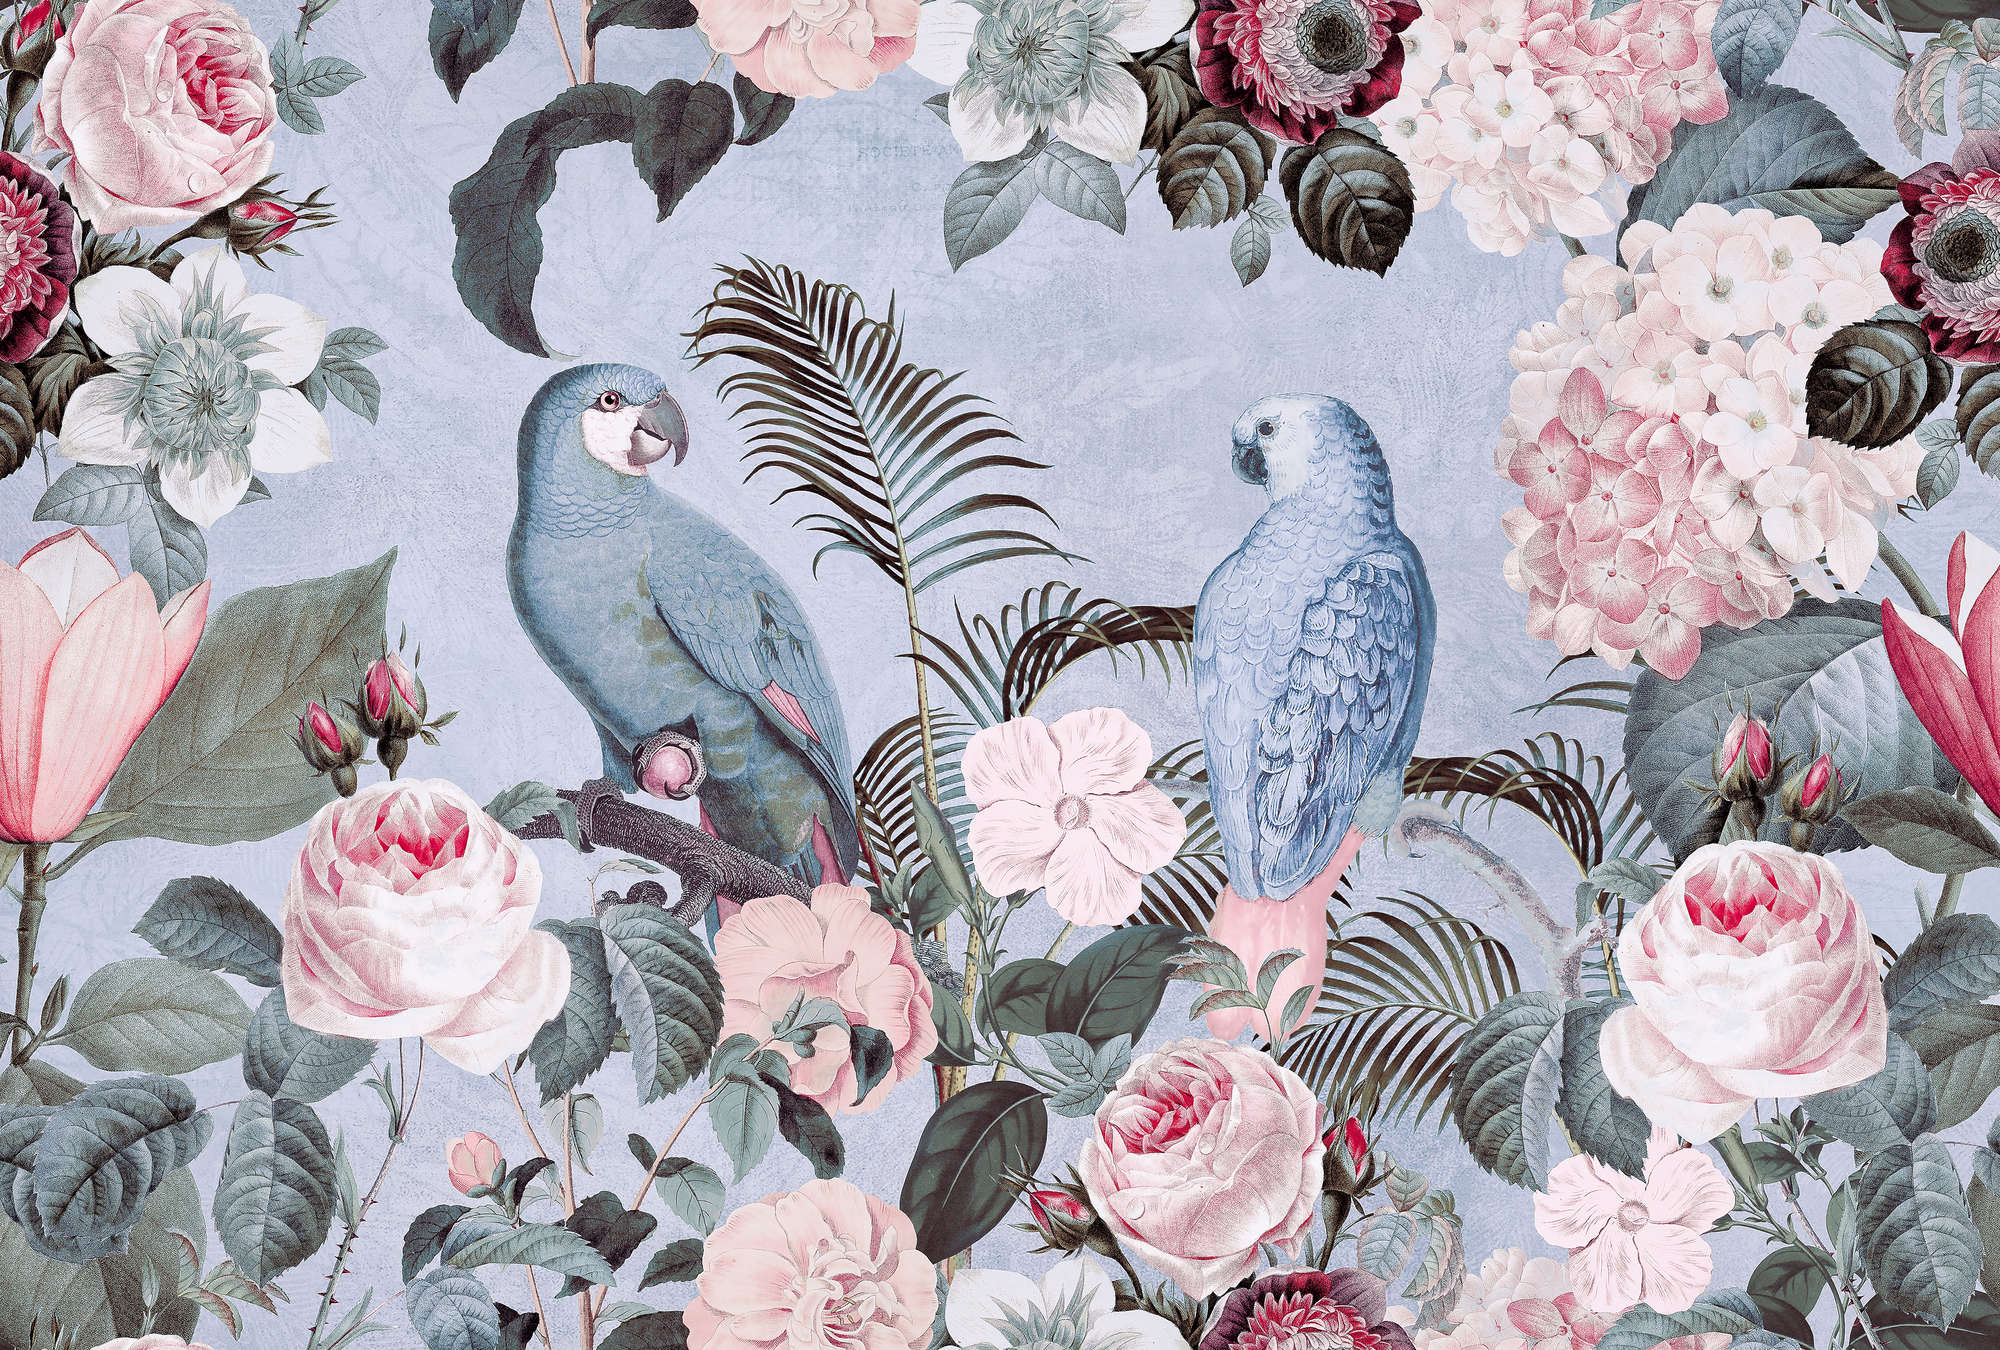             Parrot Rendezvous Behang met Bloemenmotief - Blauw
        